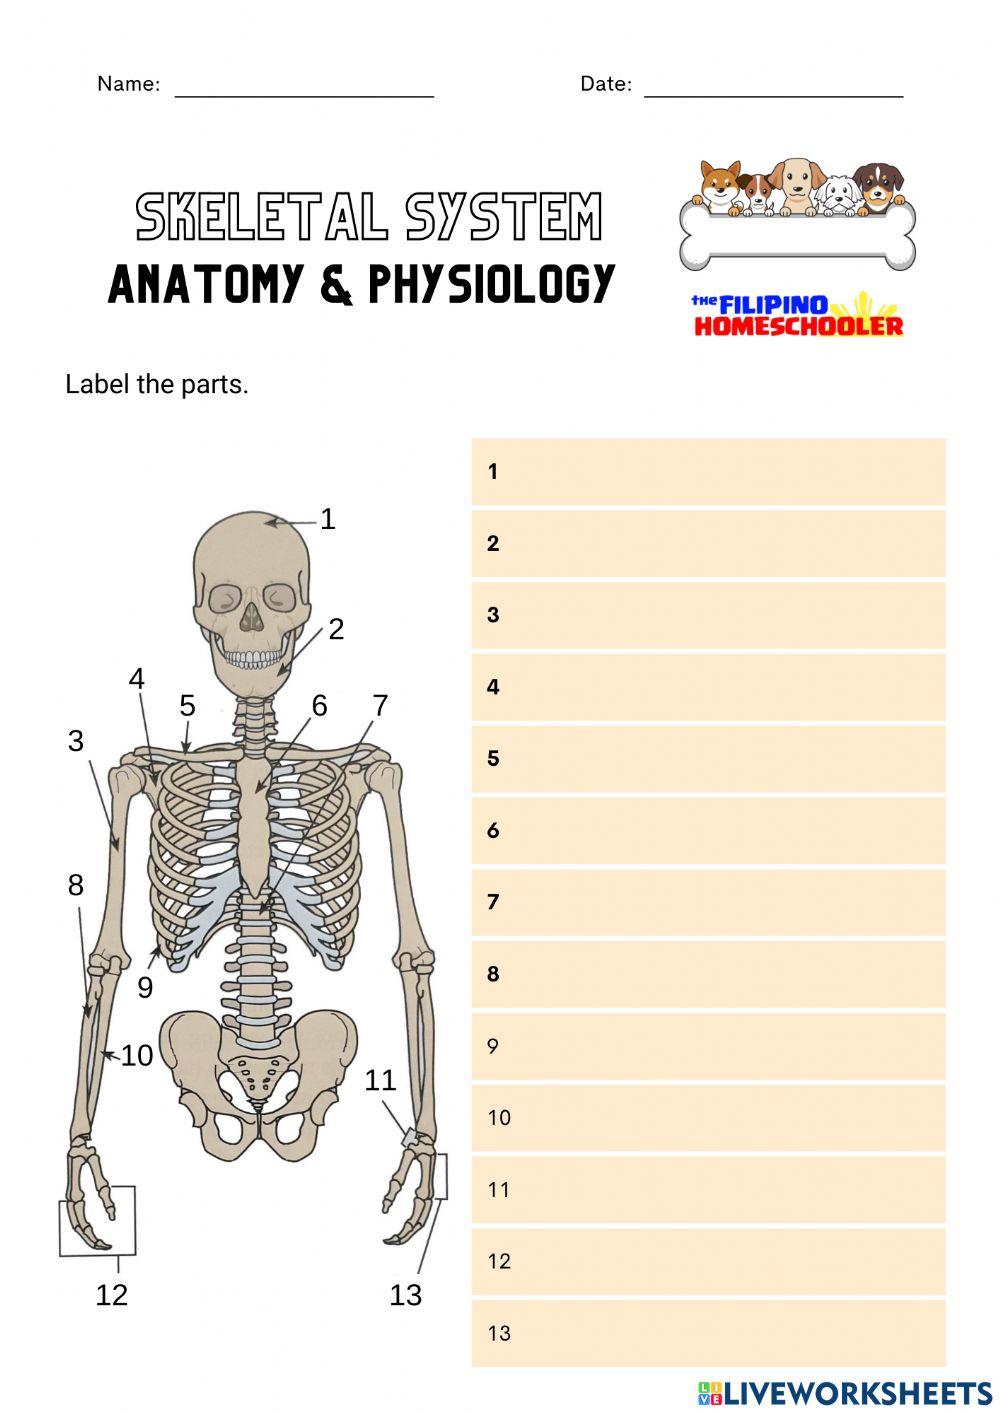 Skeletal System (Upper)